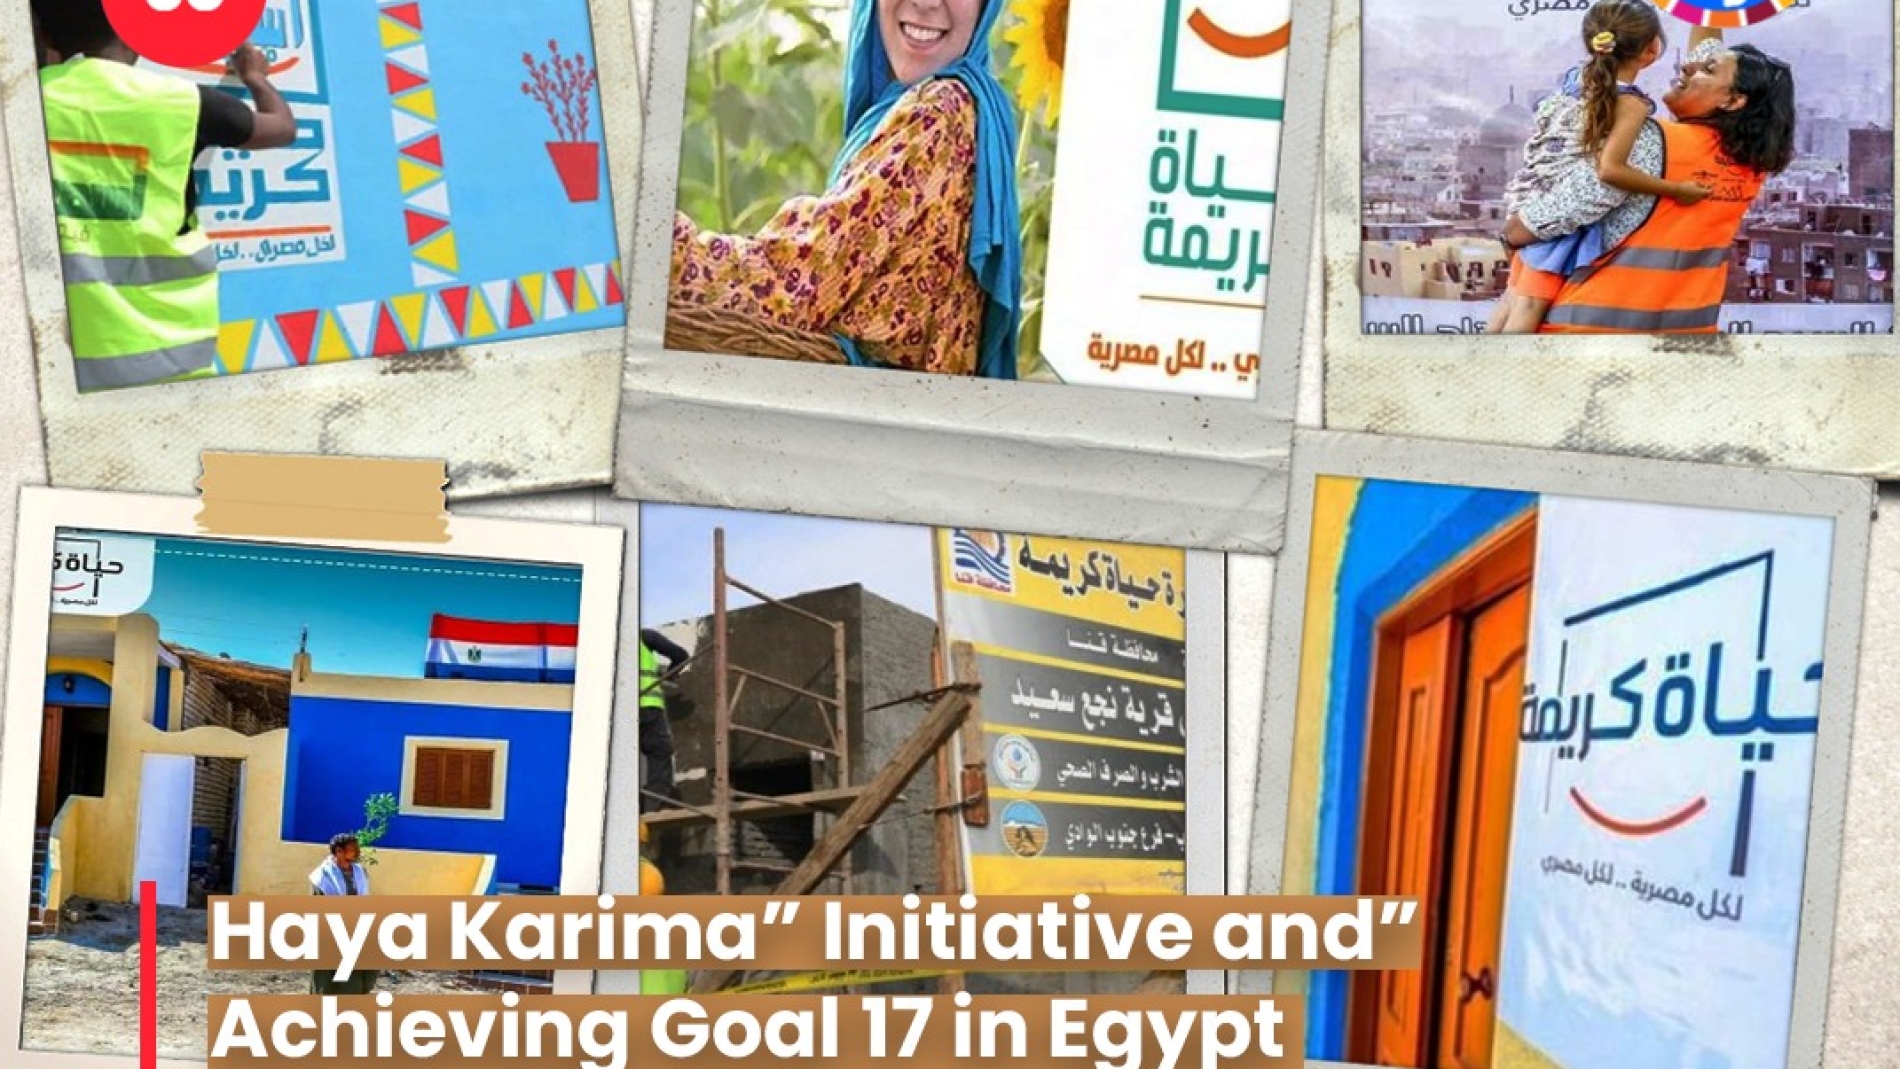 مبادرة “هيا كريمة” وتحقيق الهدف 17 في مصر